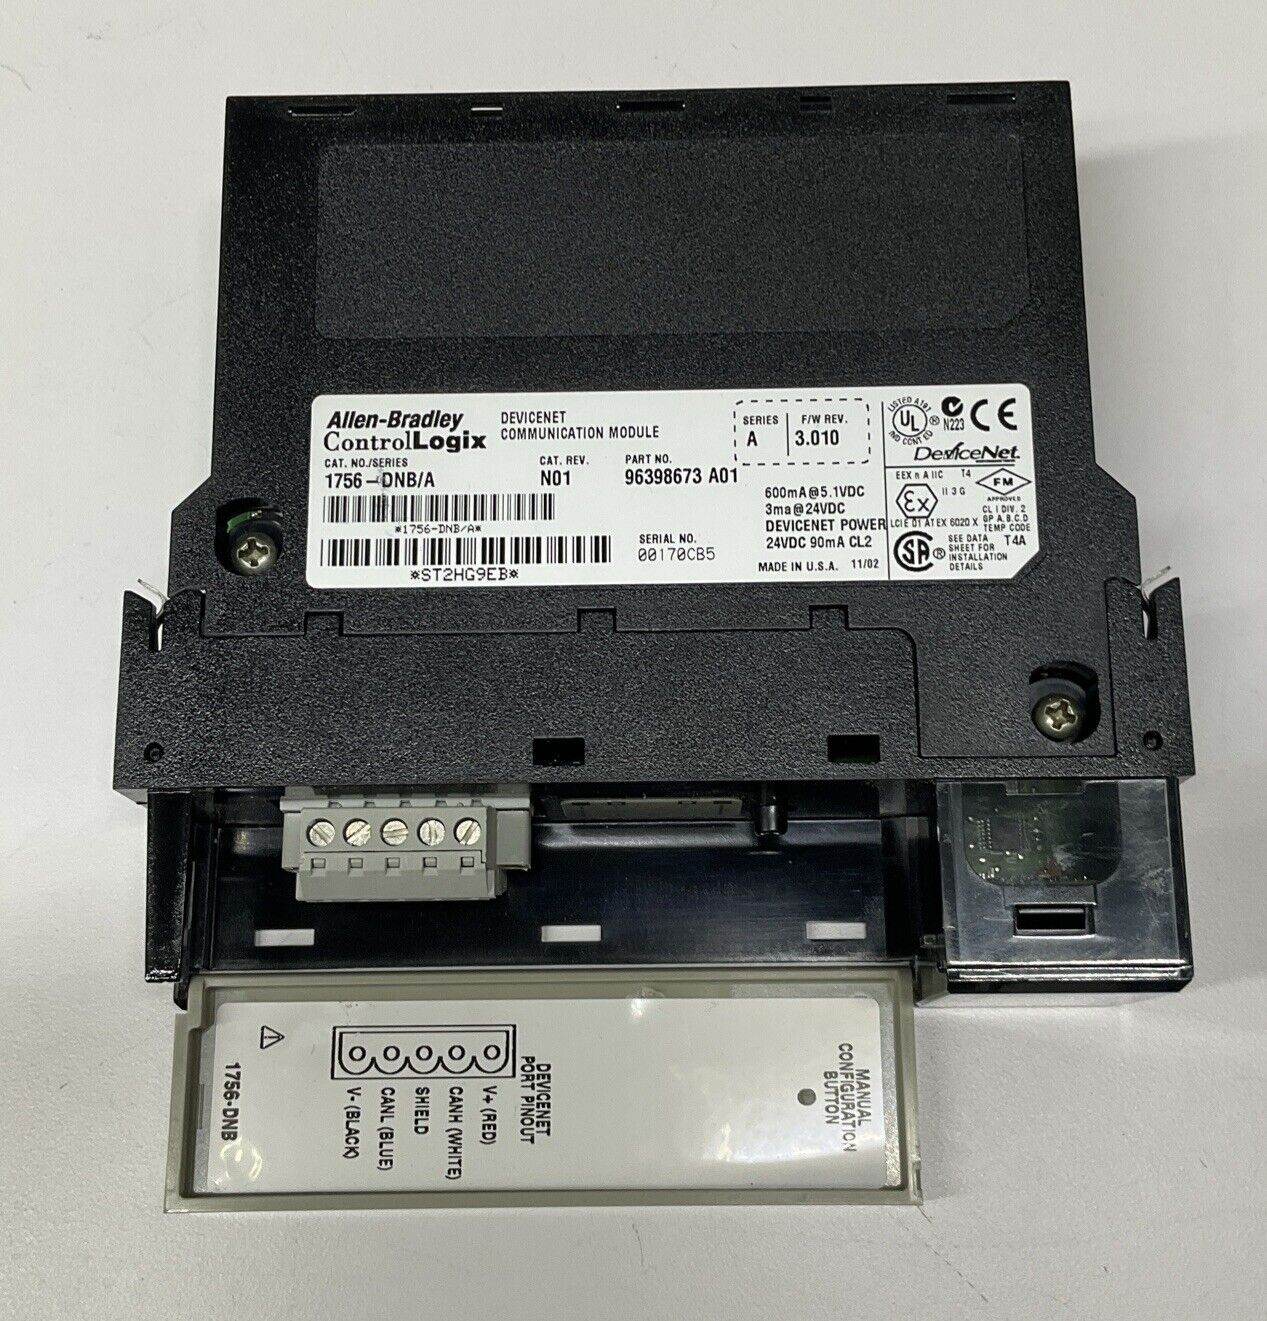 Allen-Bradley 1756-DNB/A DeviceNet Communication Module F/W 3.010 (BL288)